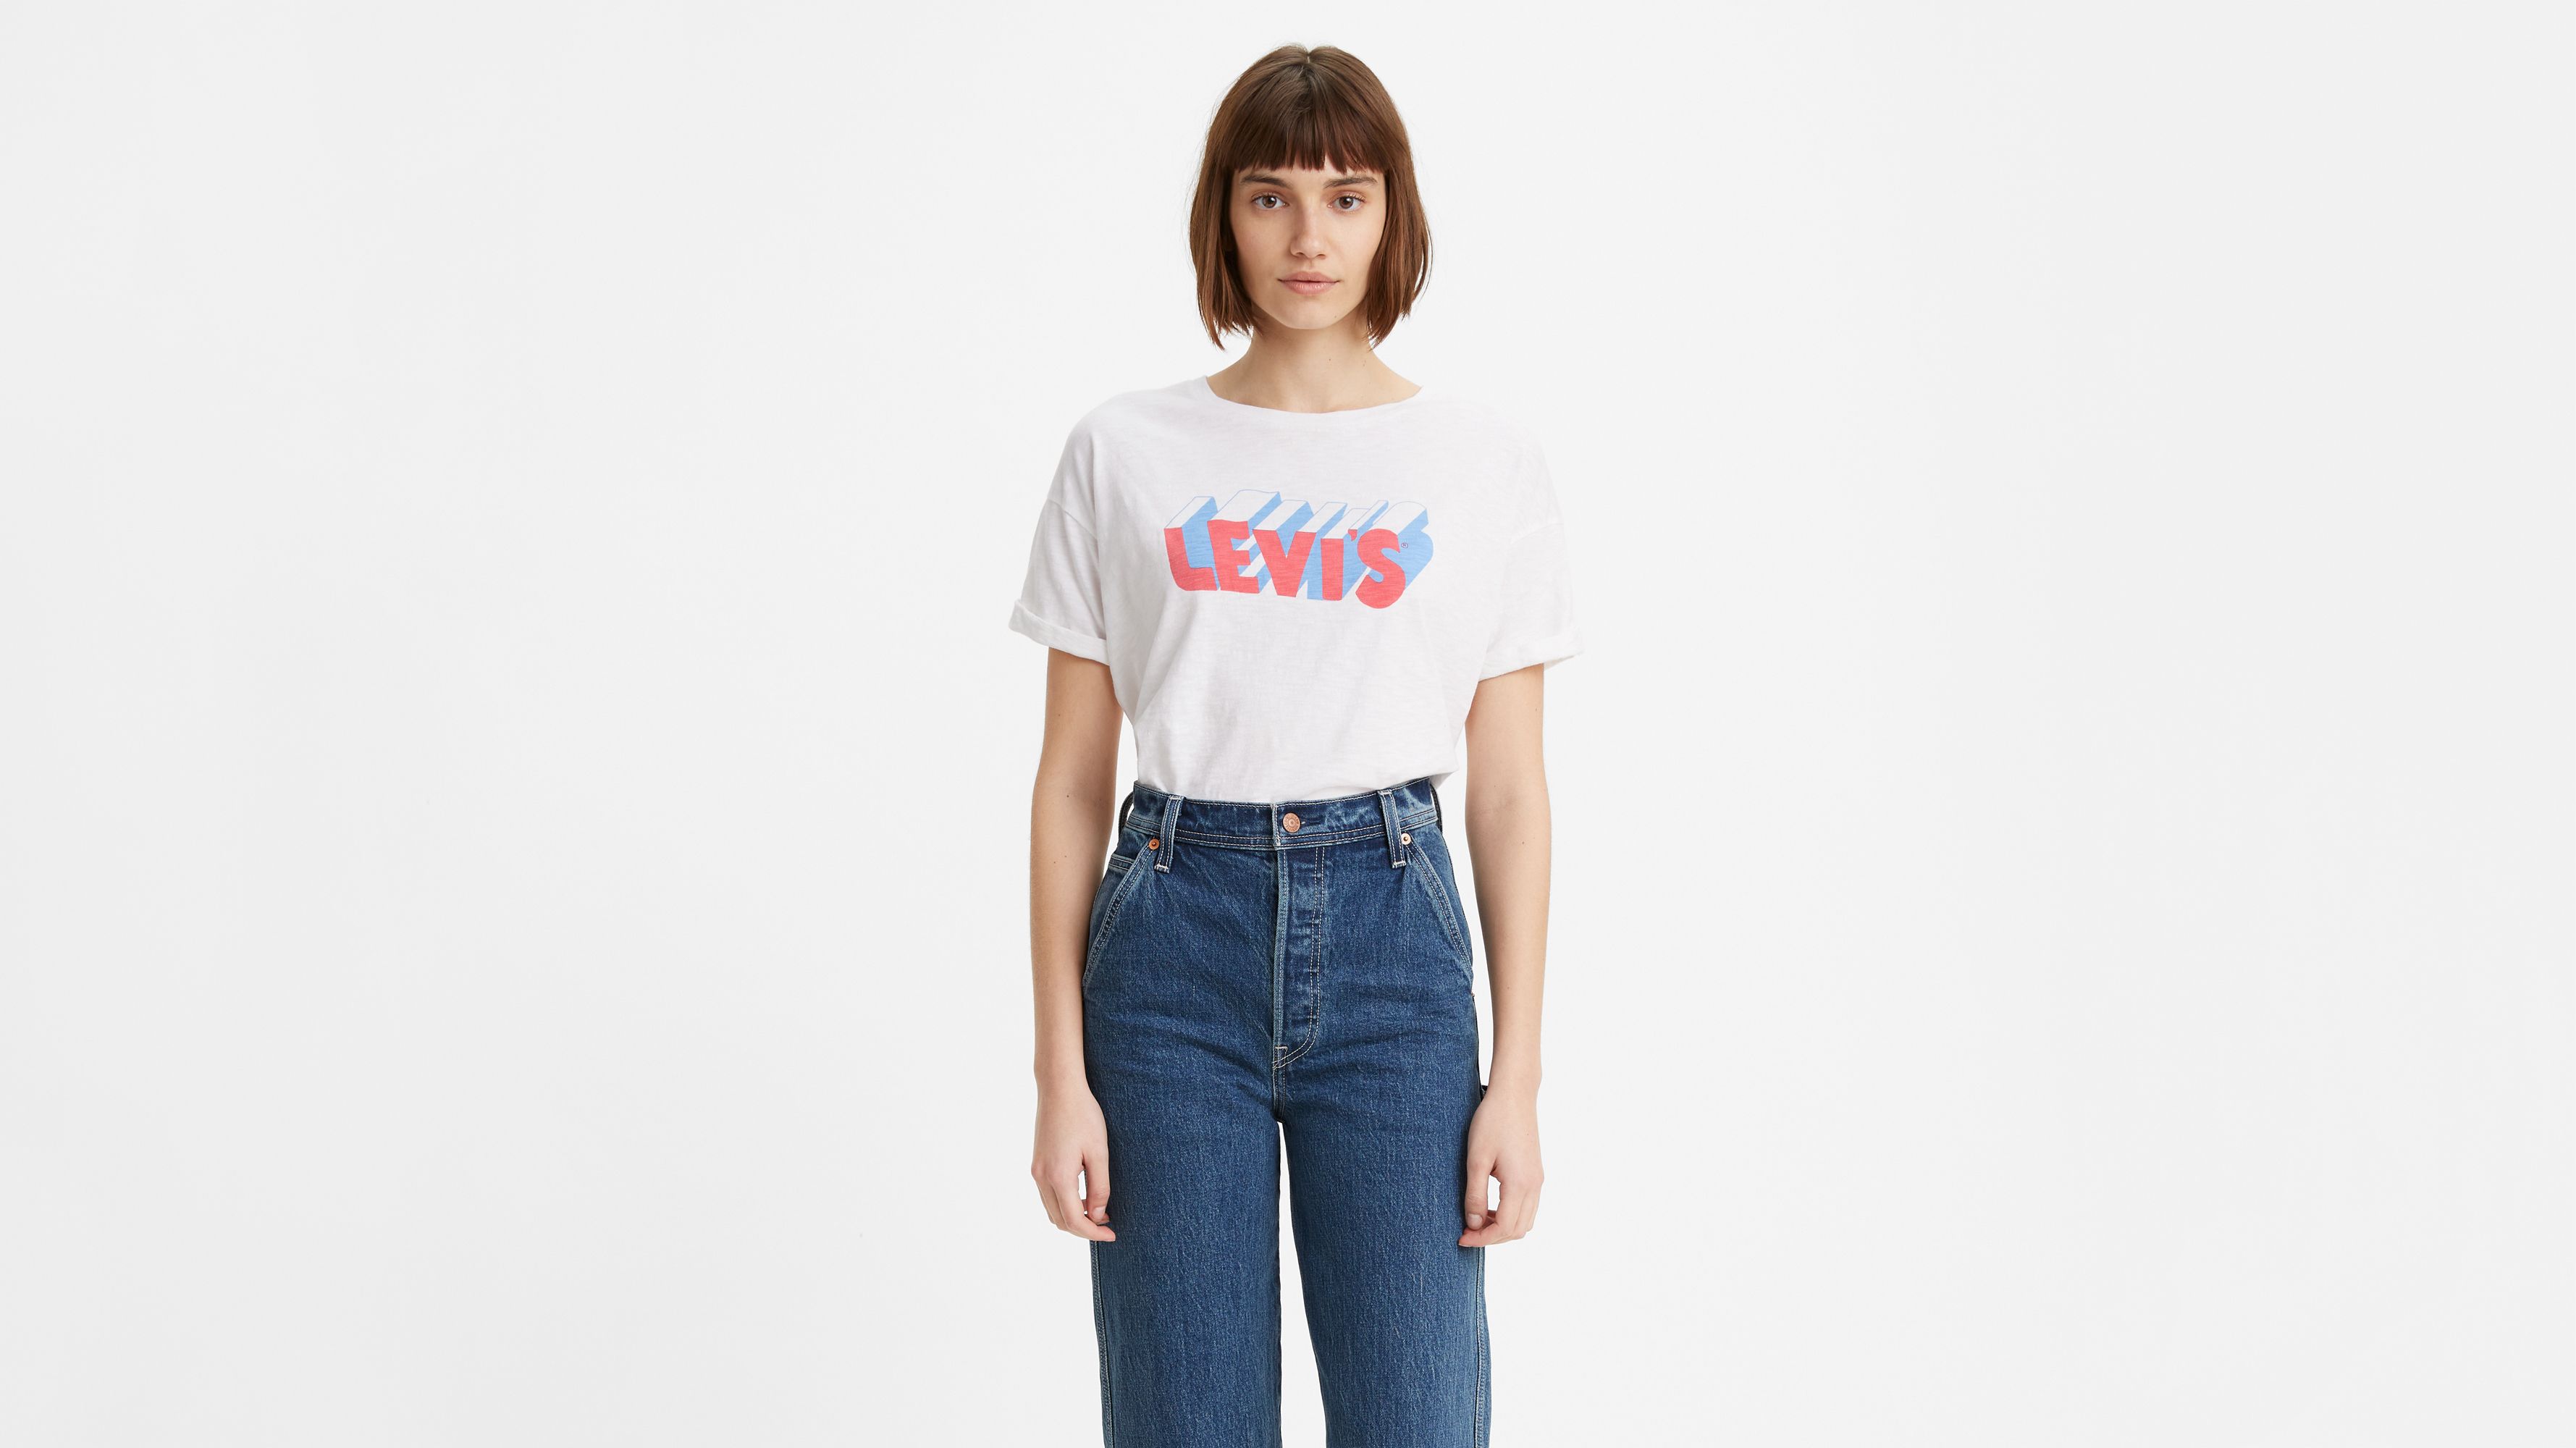 levis t shirt women's sale